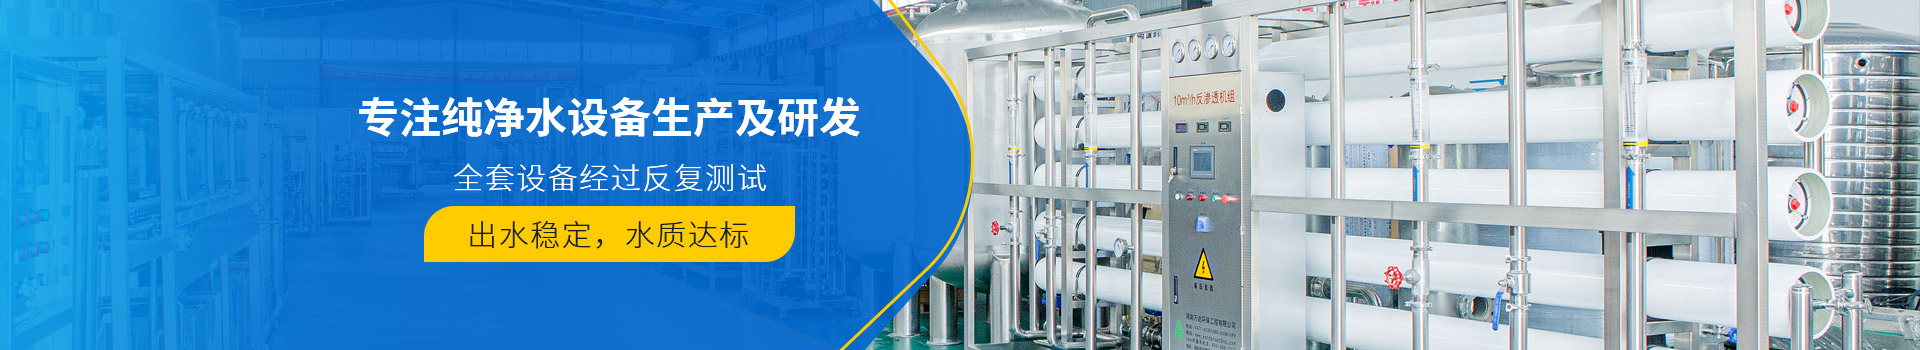 电厂锅炉水处理系统-超纯水设备-武汉纯水设备厂家 (PC+WAP)-纯净水设备生产销售